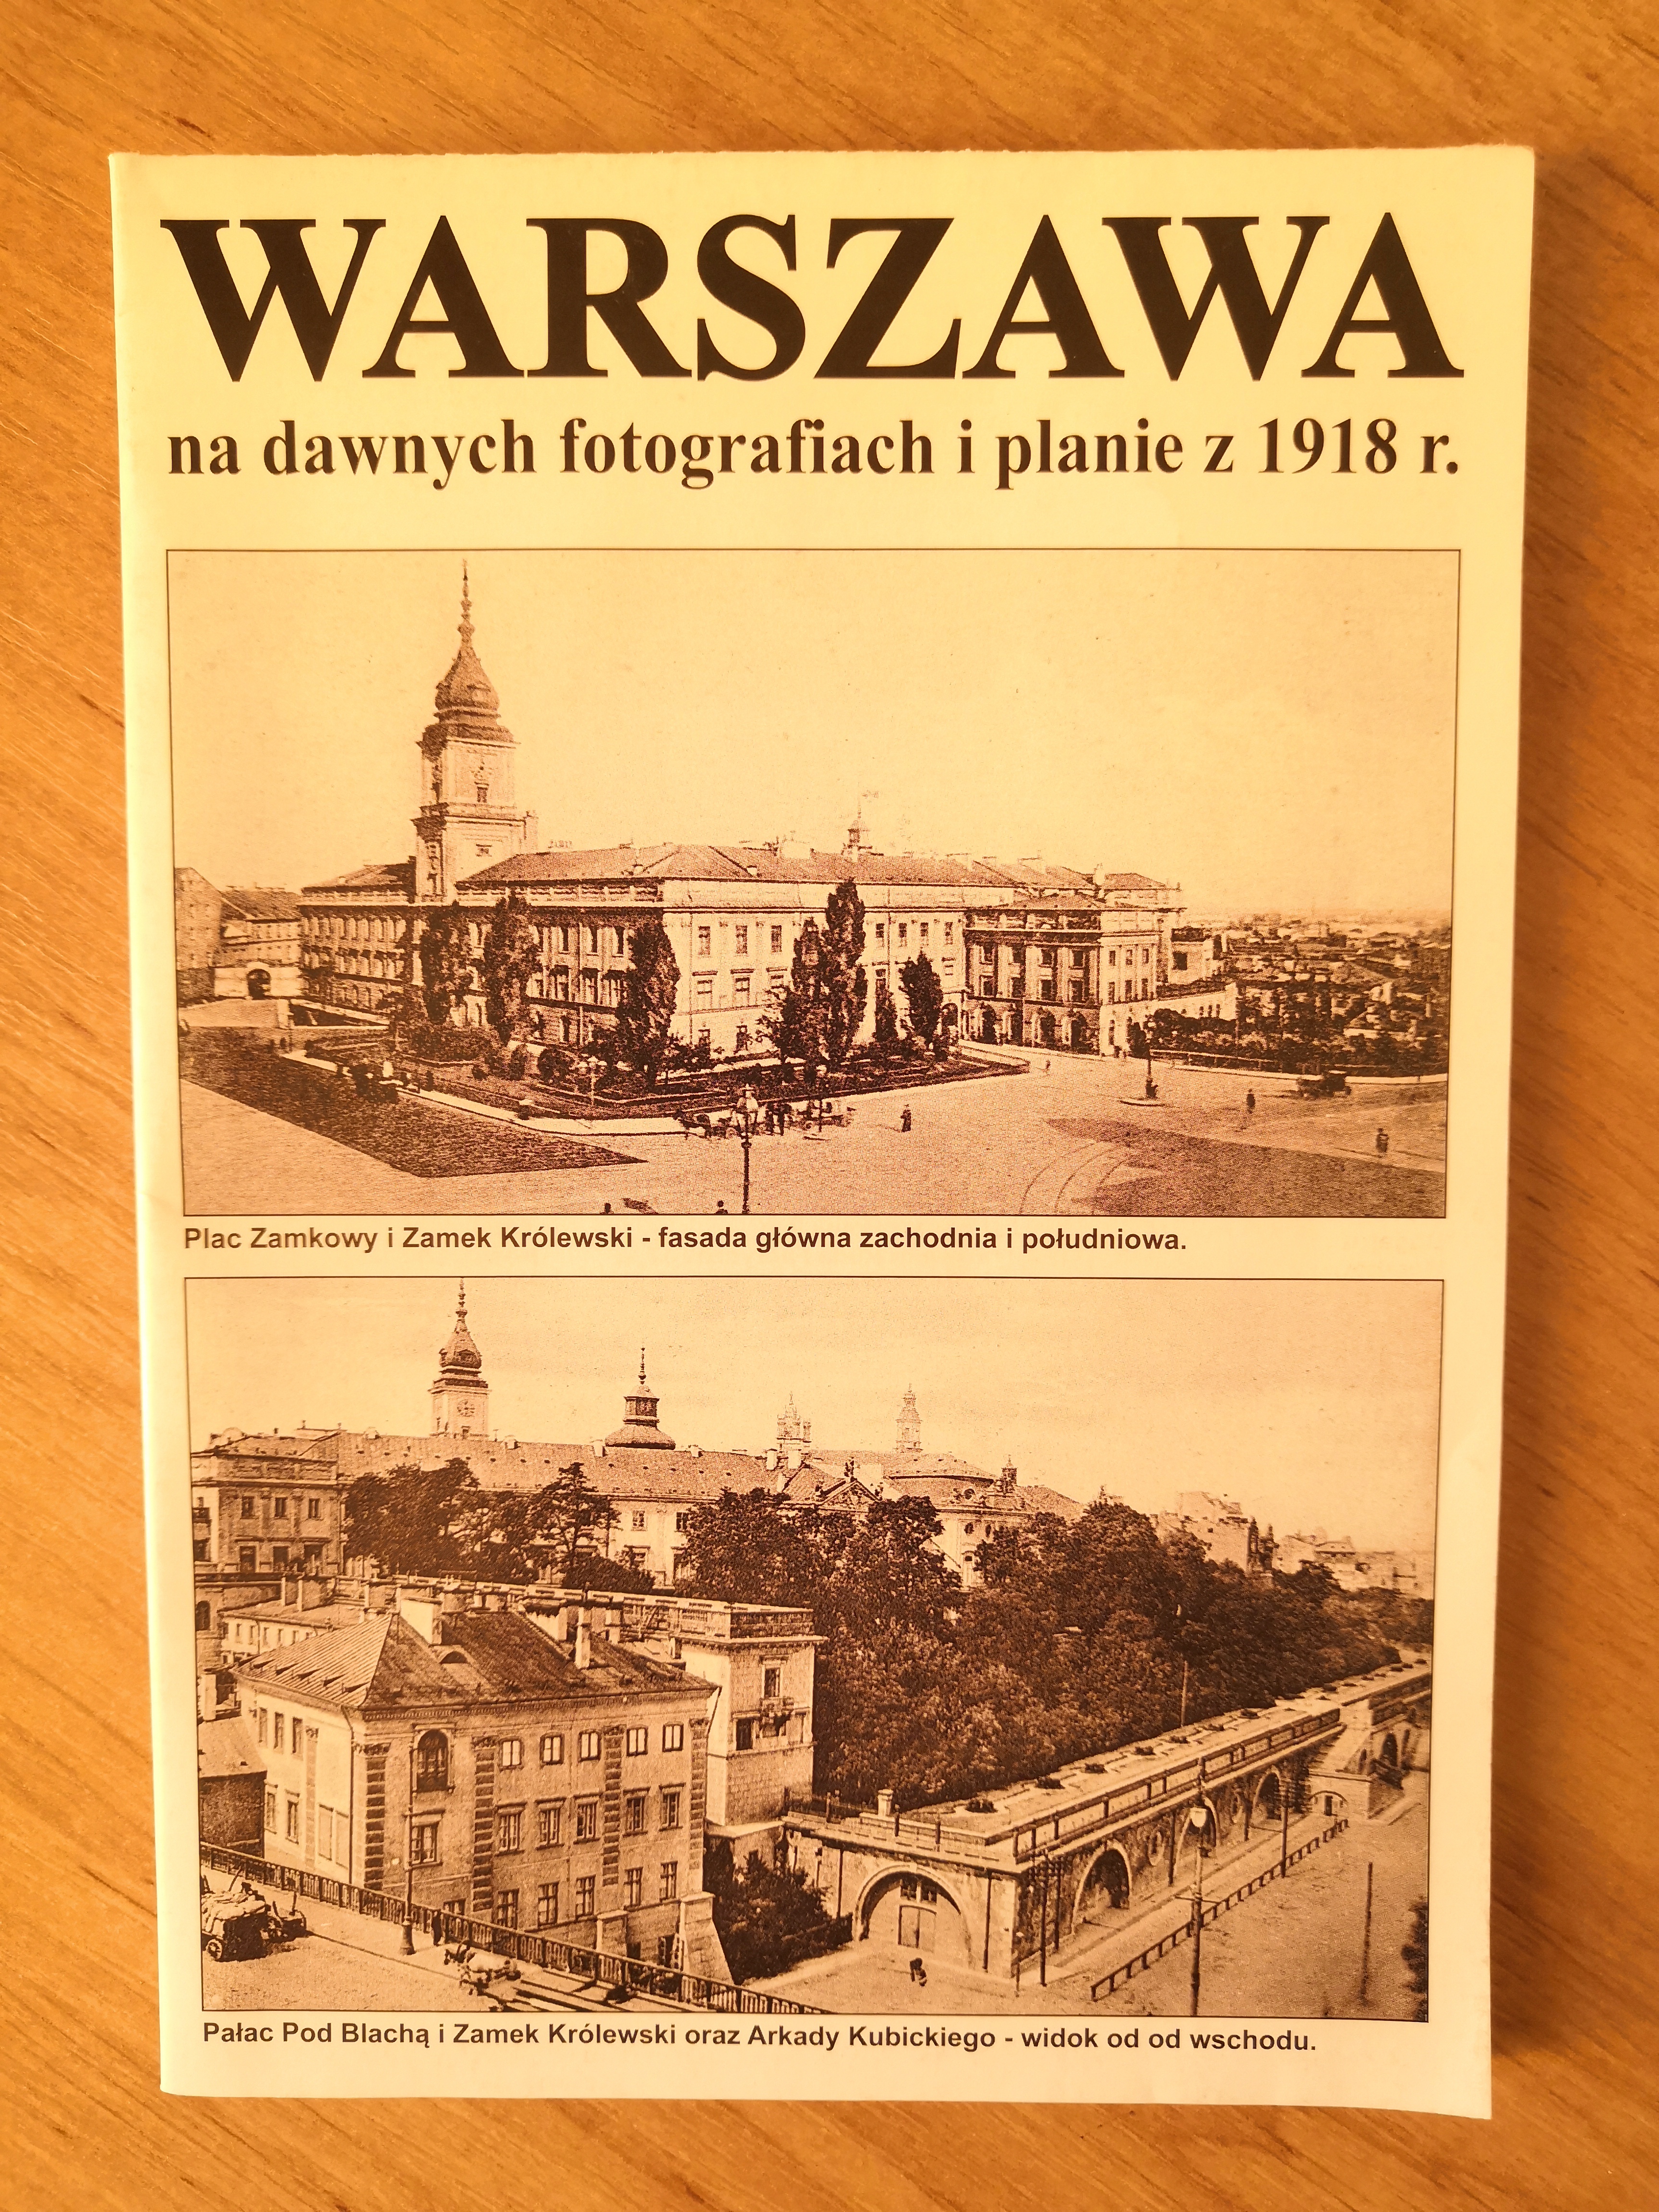 Warszawa na dawnych fotografiach i planie z 1918 r. (J.A.Krawczyk)